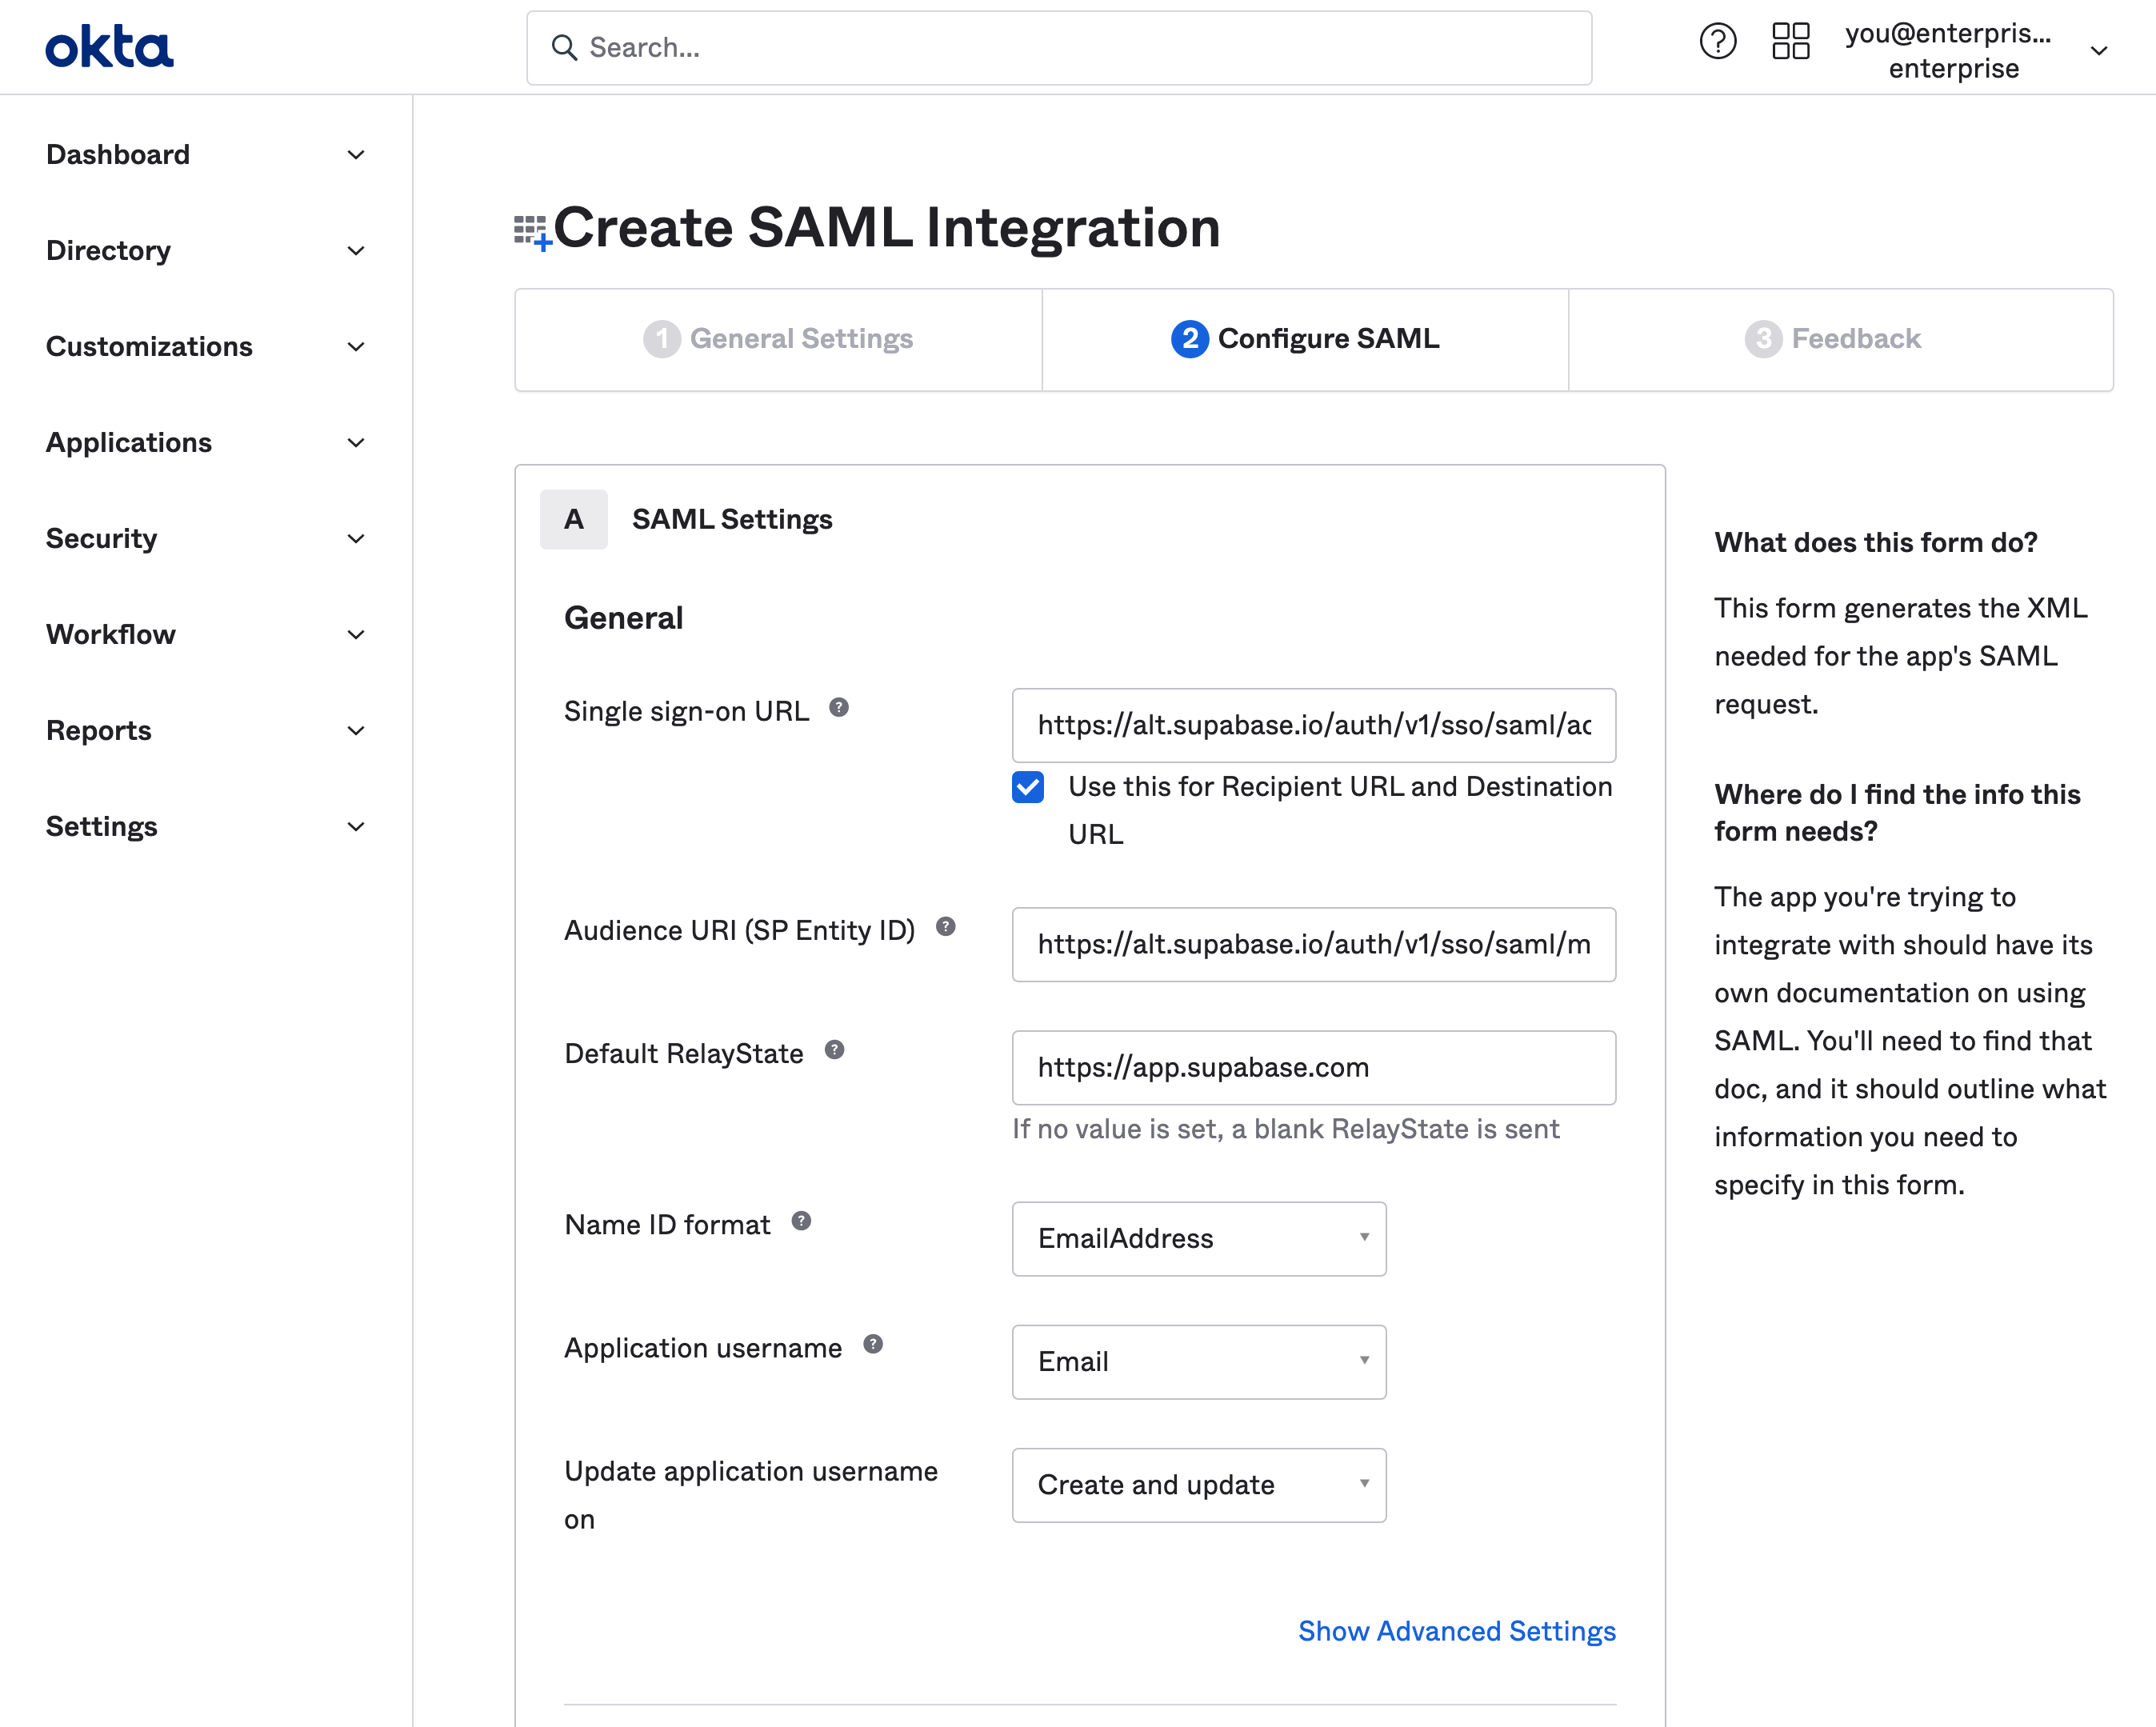 Okta dashboard: Create SAML Integration
wizard, Configure SAML step